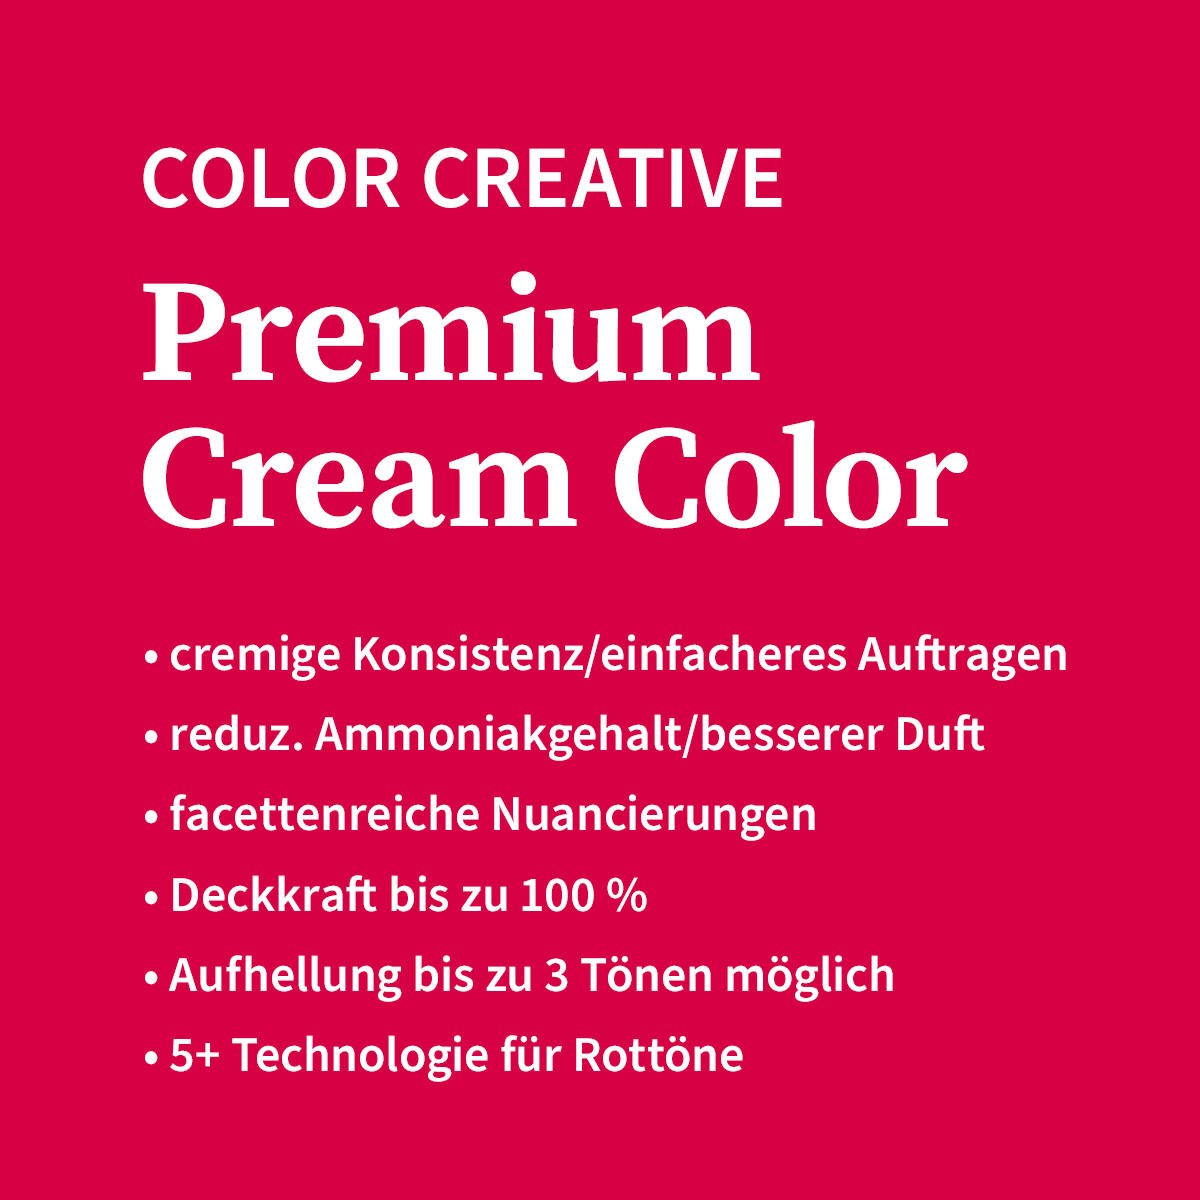 Basler Color Creative Premium Cream Color 5/6 viola marrone chiaro - bordeaux, tubo 60 ml - 4